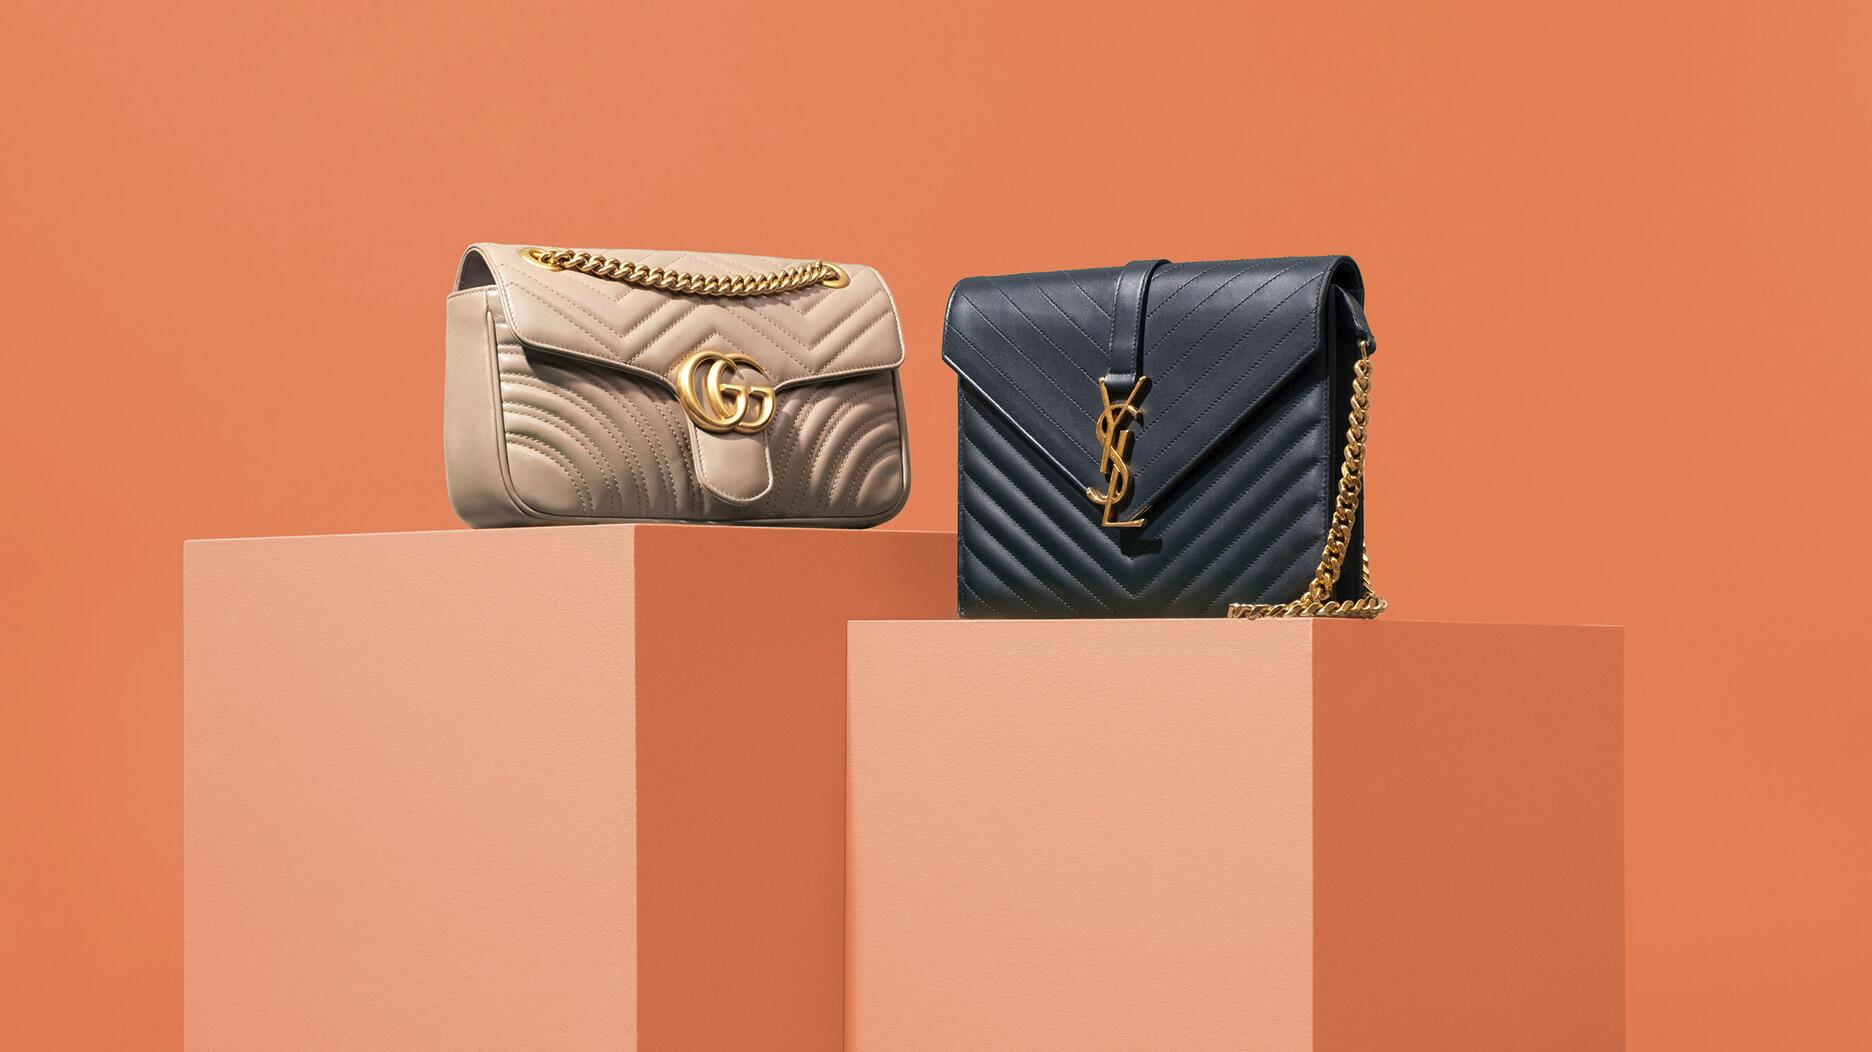 A Gucci purse and a YSL purse 